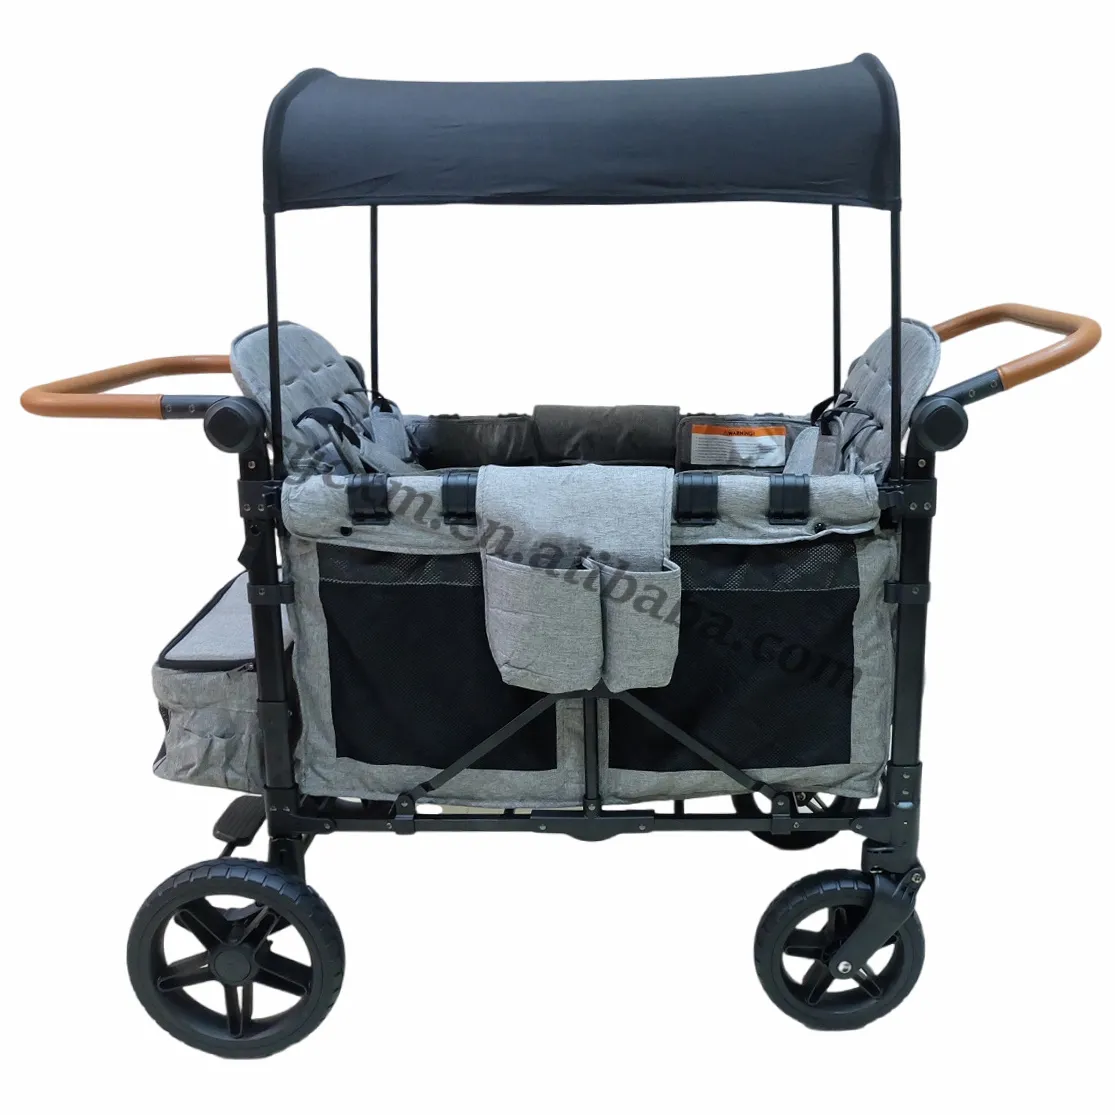 Vente directe en usine de chariot en aluminium ultra léger pour bébé poussette pliante personnalisée chariot de jardin multifonctionnel pour bébé